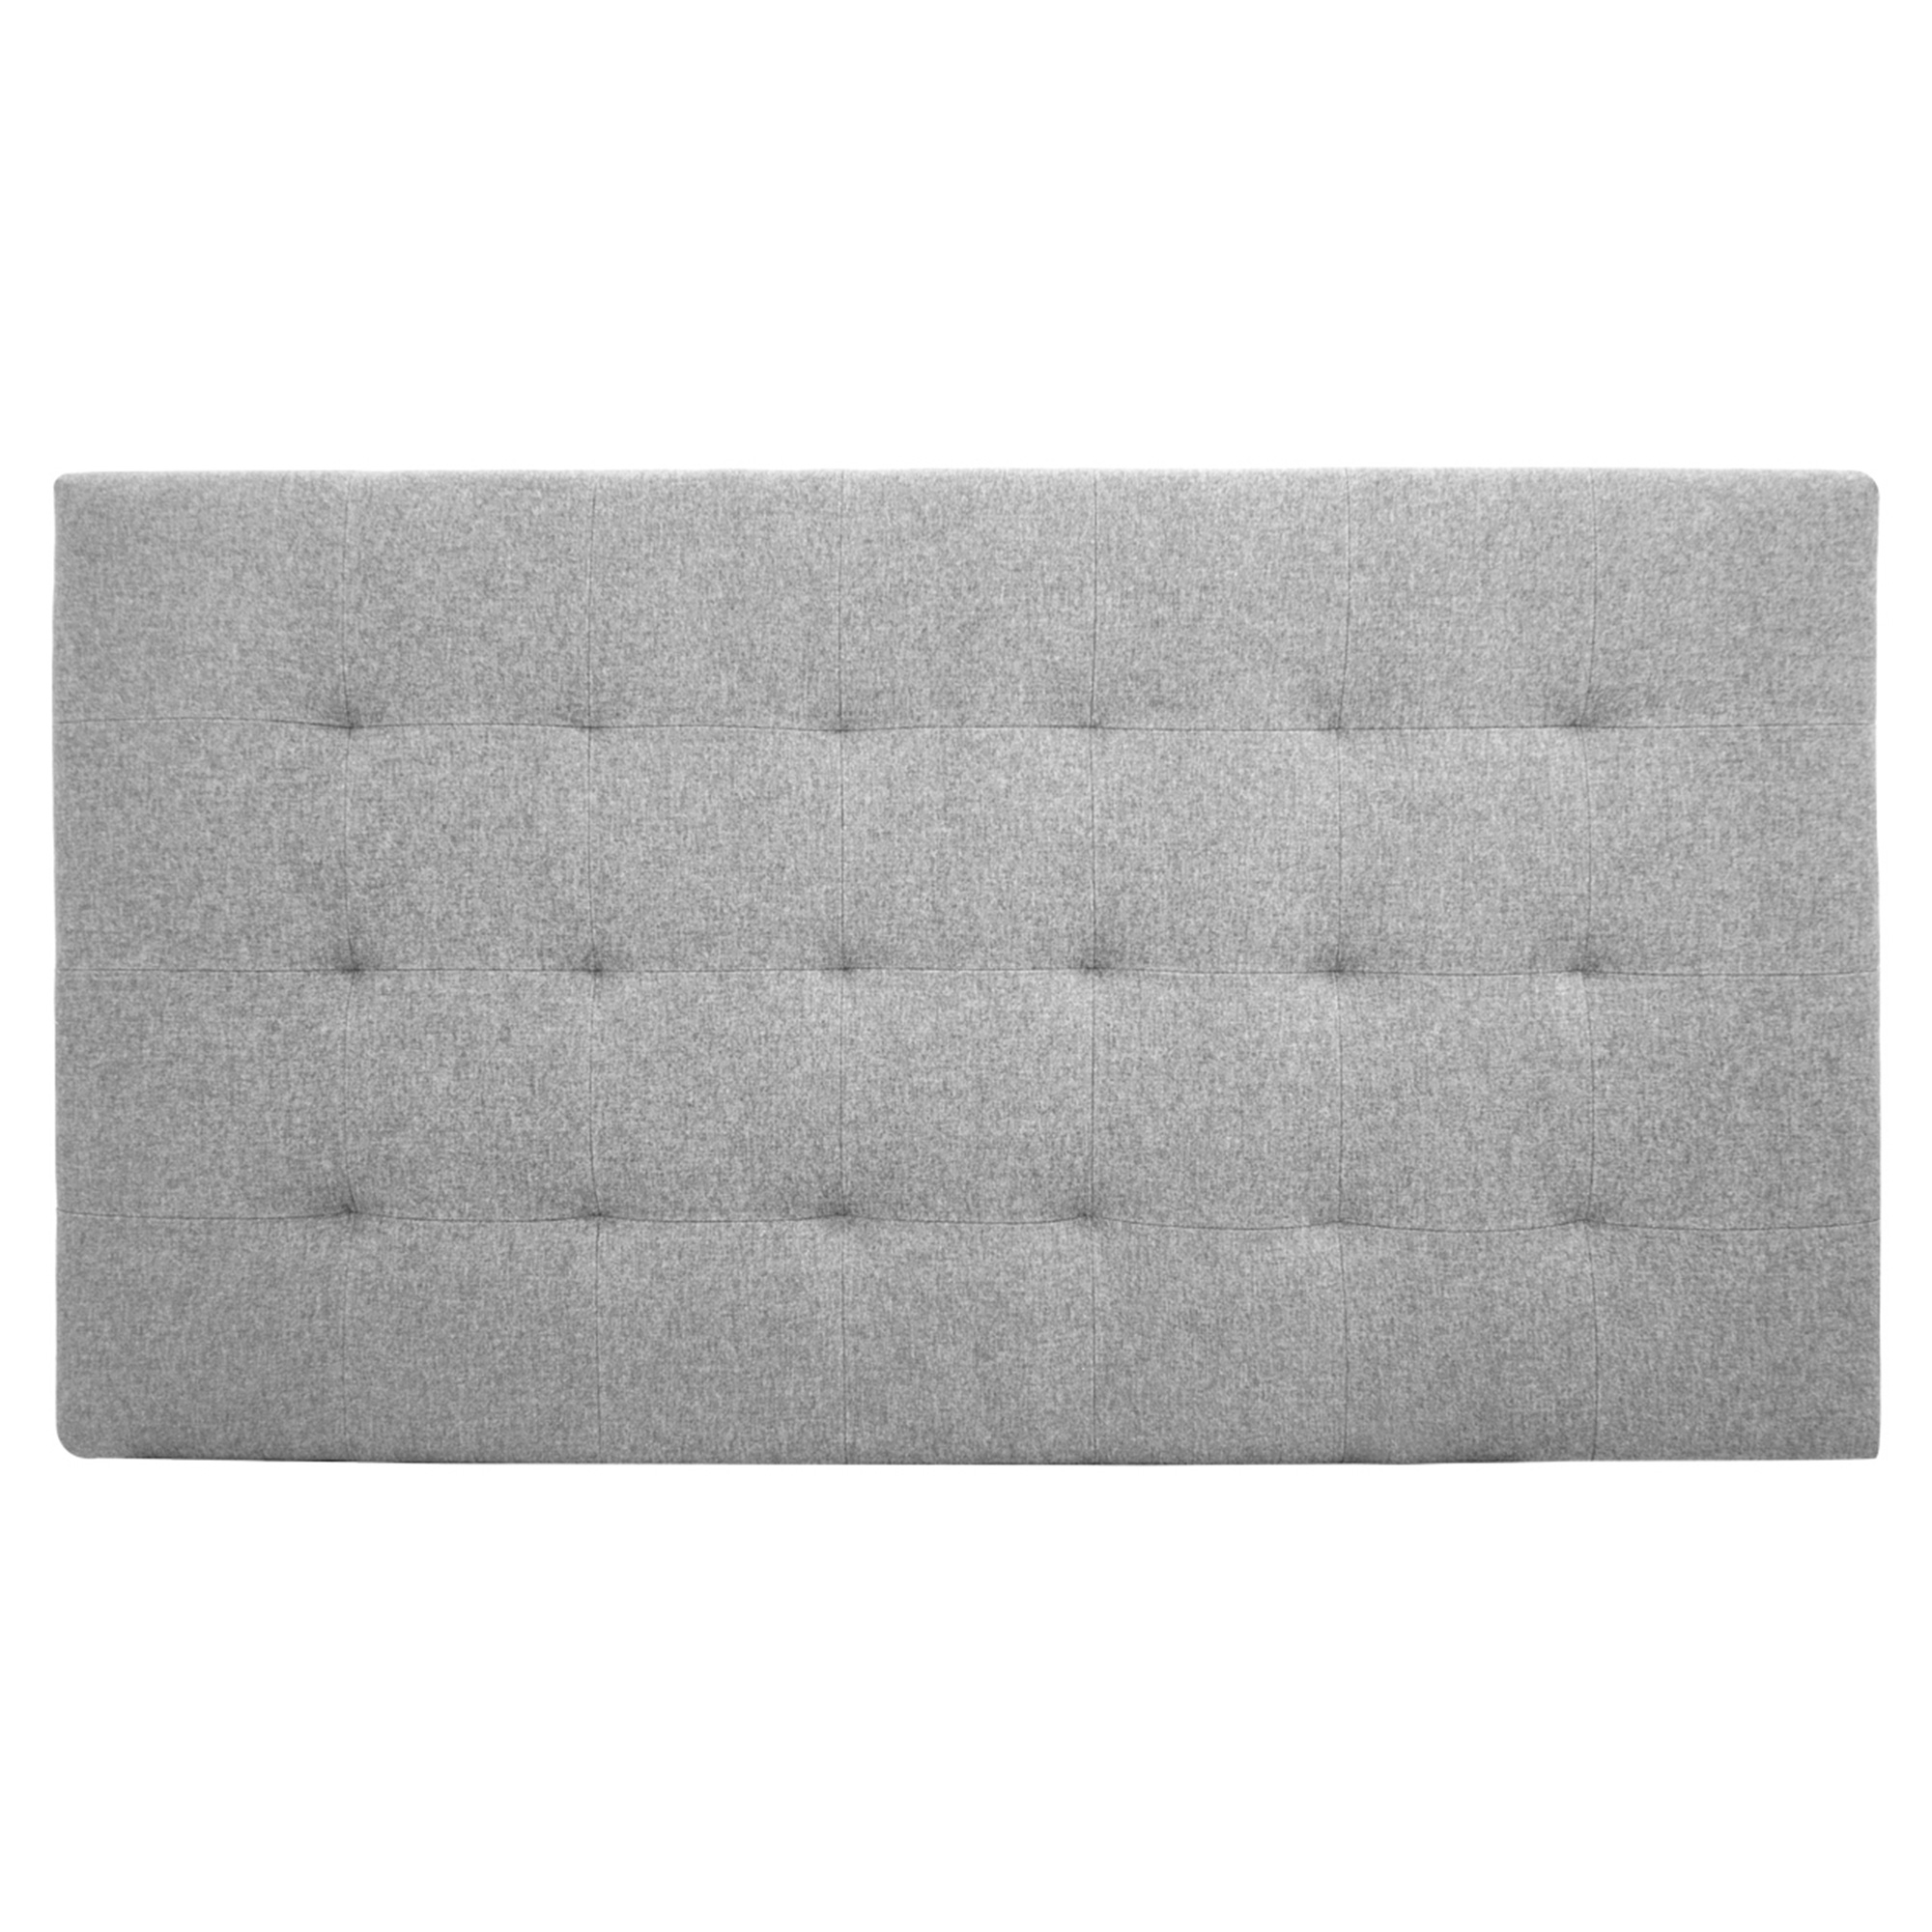 Tête de lit polyester plis couleur grise 90x80cm